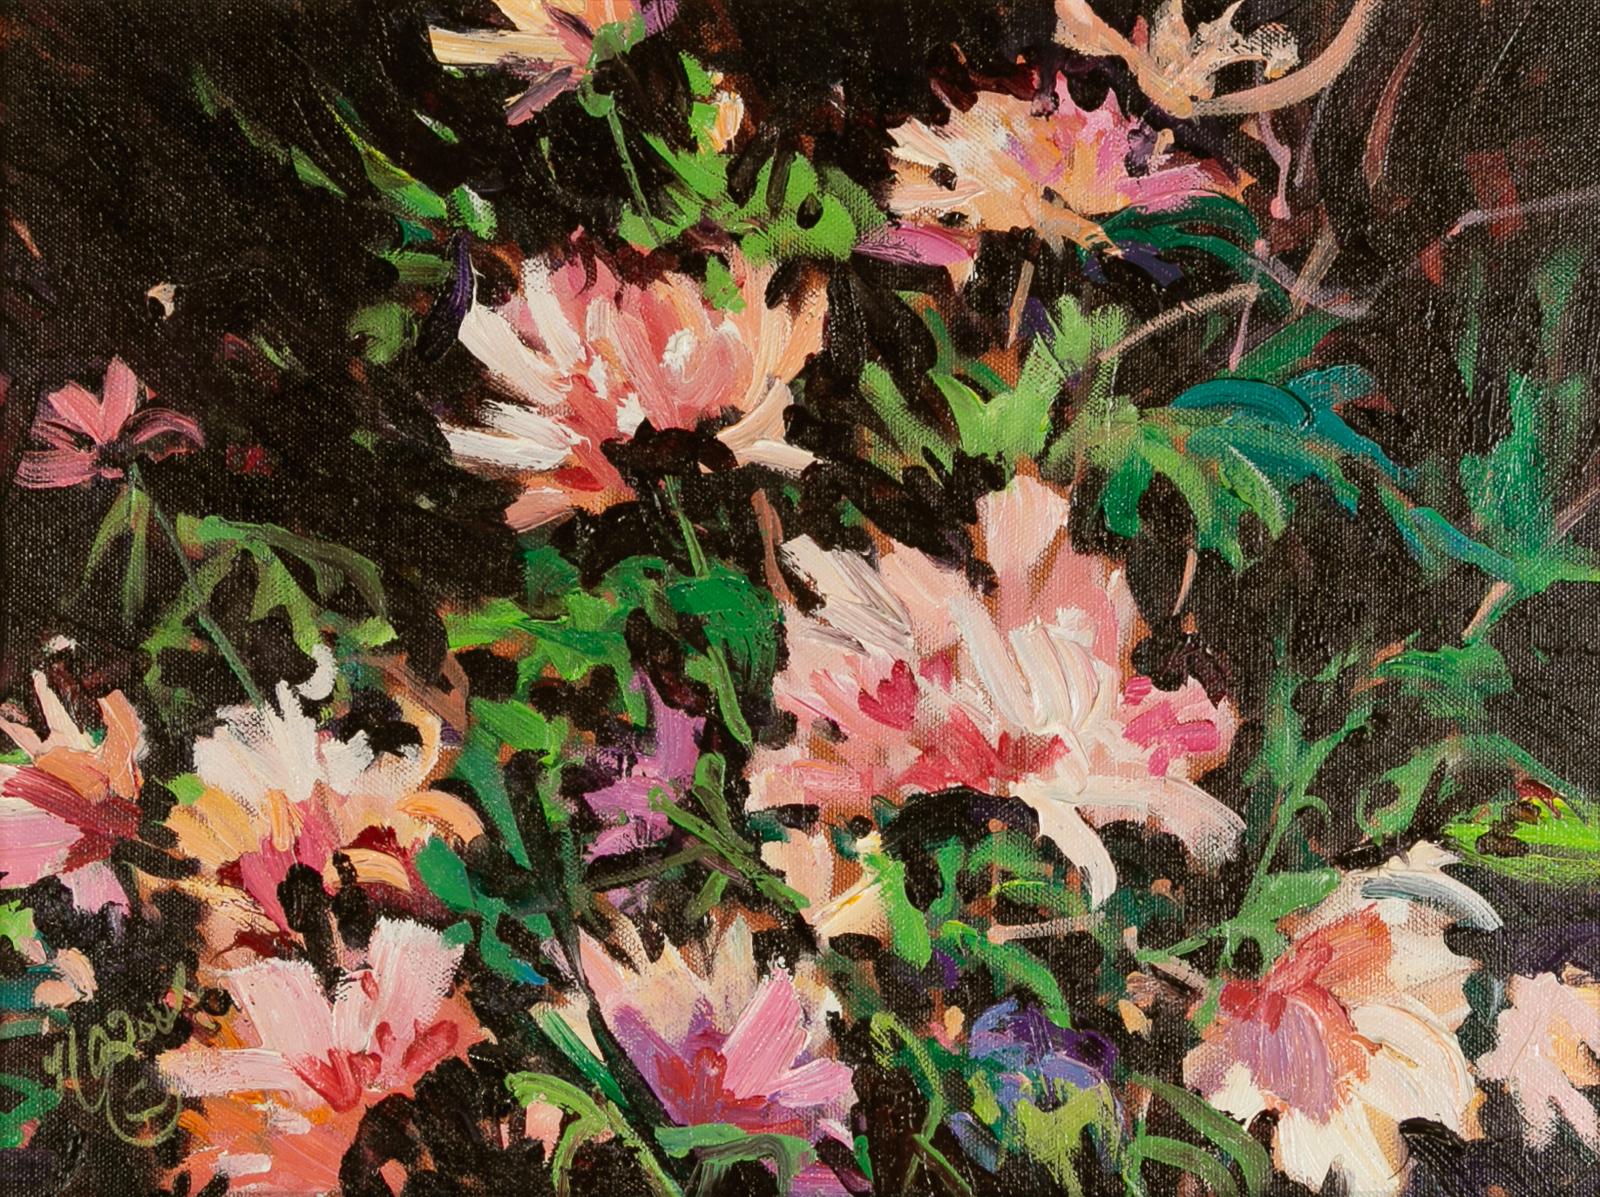 Nancy O'Toole - Flowers For Mona